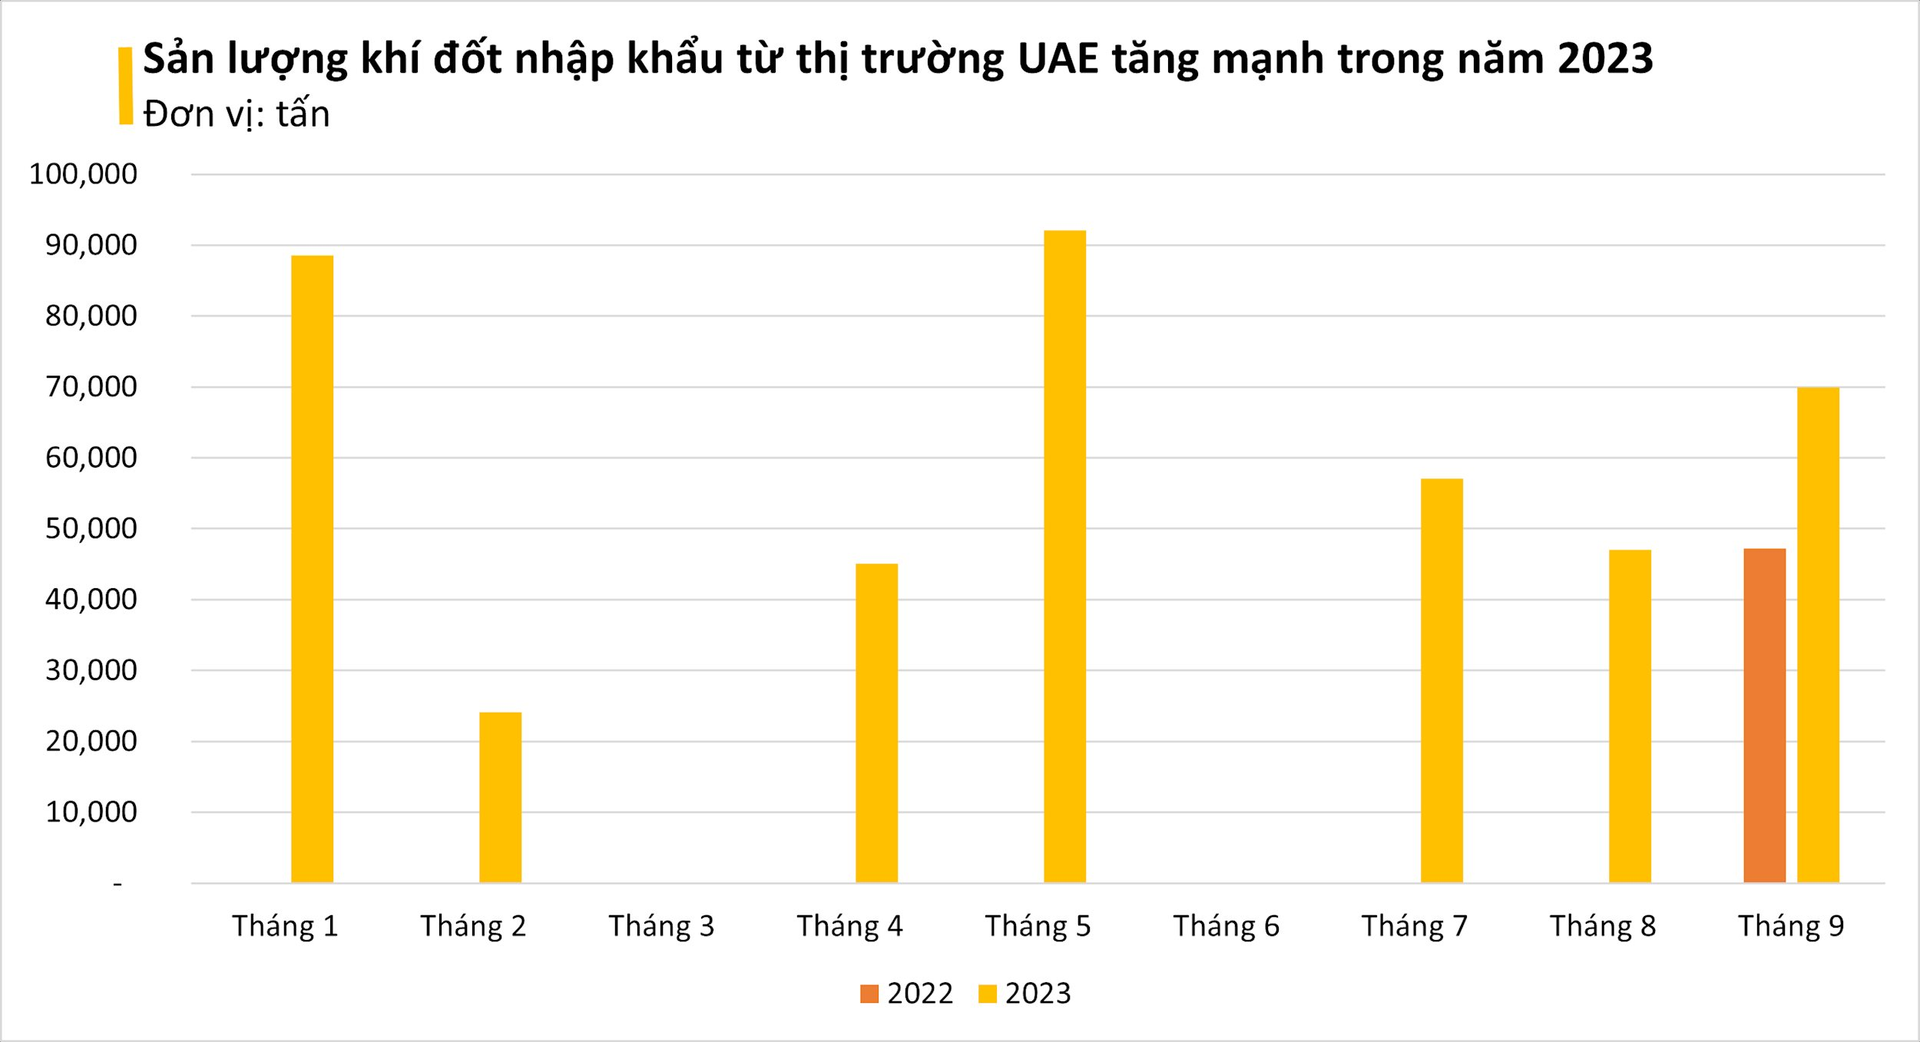 Giá cực rẻ, một mặt hàng từ Trung Đông đang ồ ạt tràn vào Việt Nam: nhập khẩu tăng gần 800%, Việt Nam được xem là 'át chủ bài' trên thị trường - Ảnh 2.